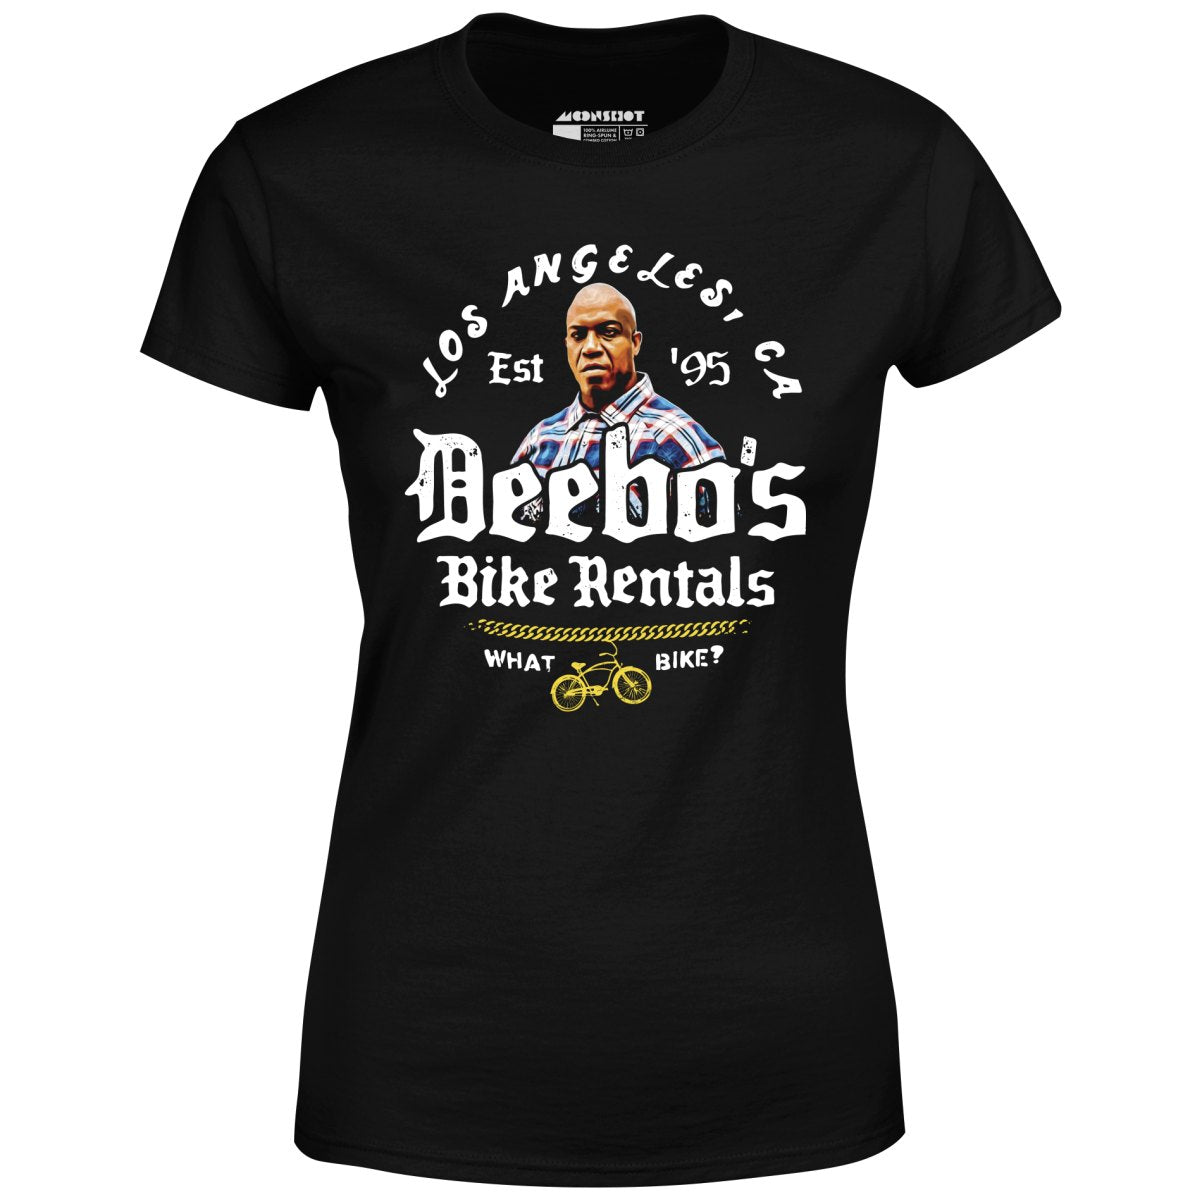 Deebo's Bike Rentals - What Bike? - Women's T-Shirt